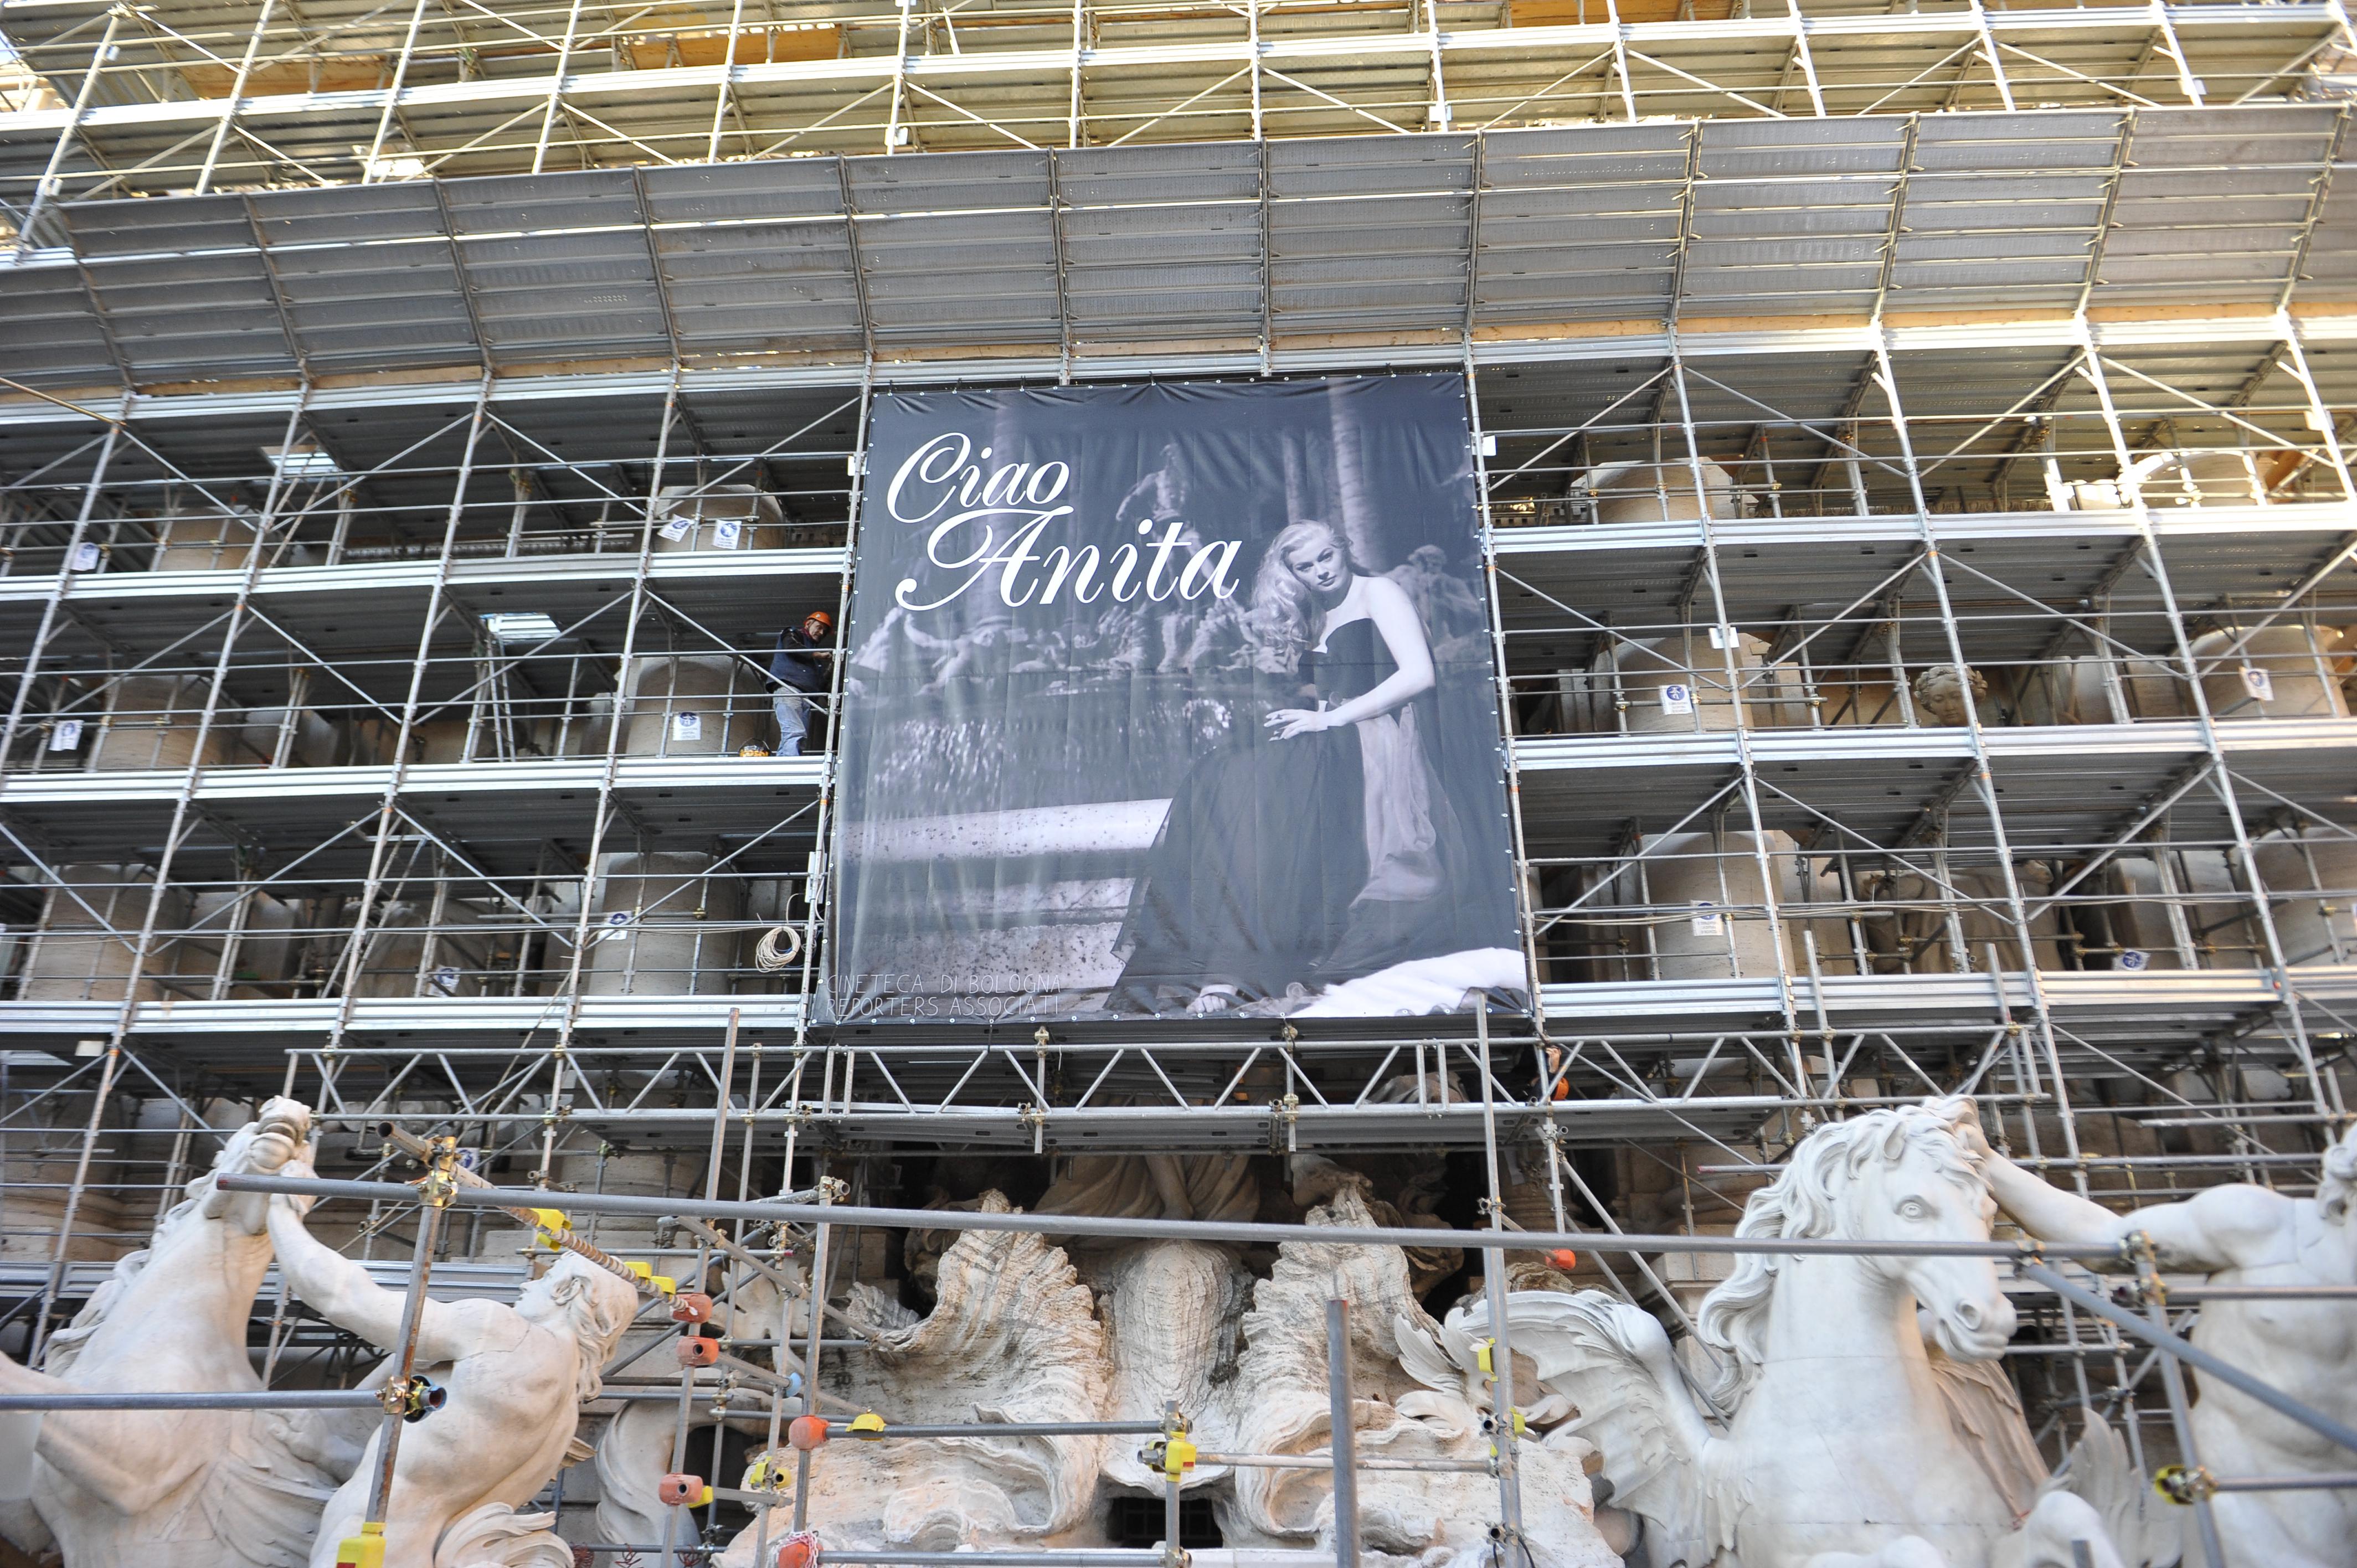 Roma, 13 gennaio 2015. Fontana di Trevi. Gigantografia di Anita Ekberg in occasione della sua morte. (Foto Adnkronos/Cristiano Camera)